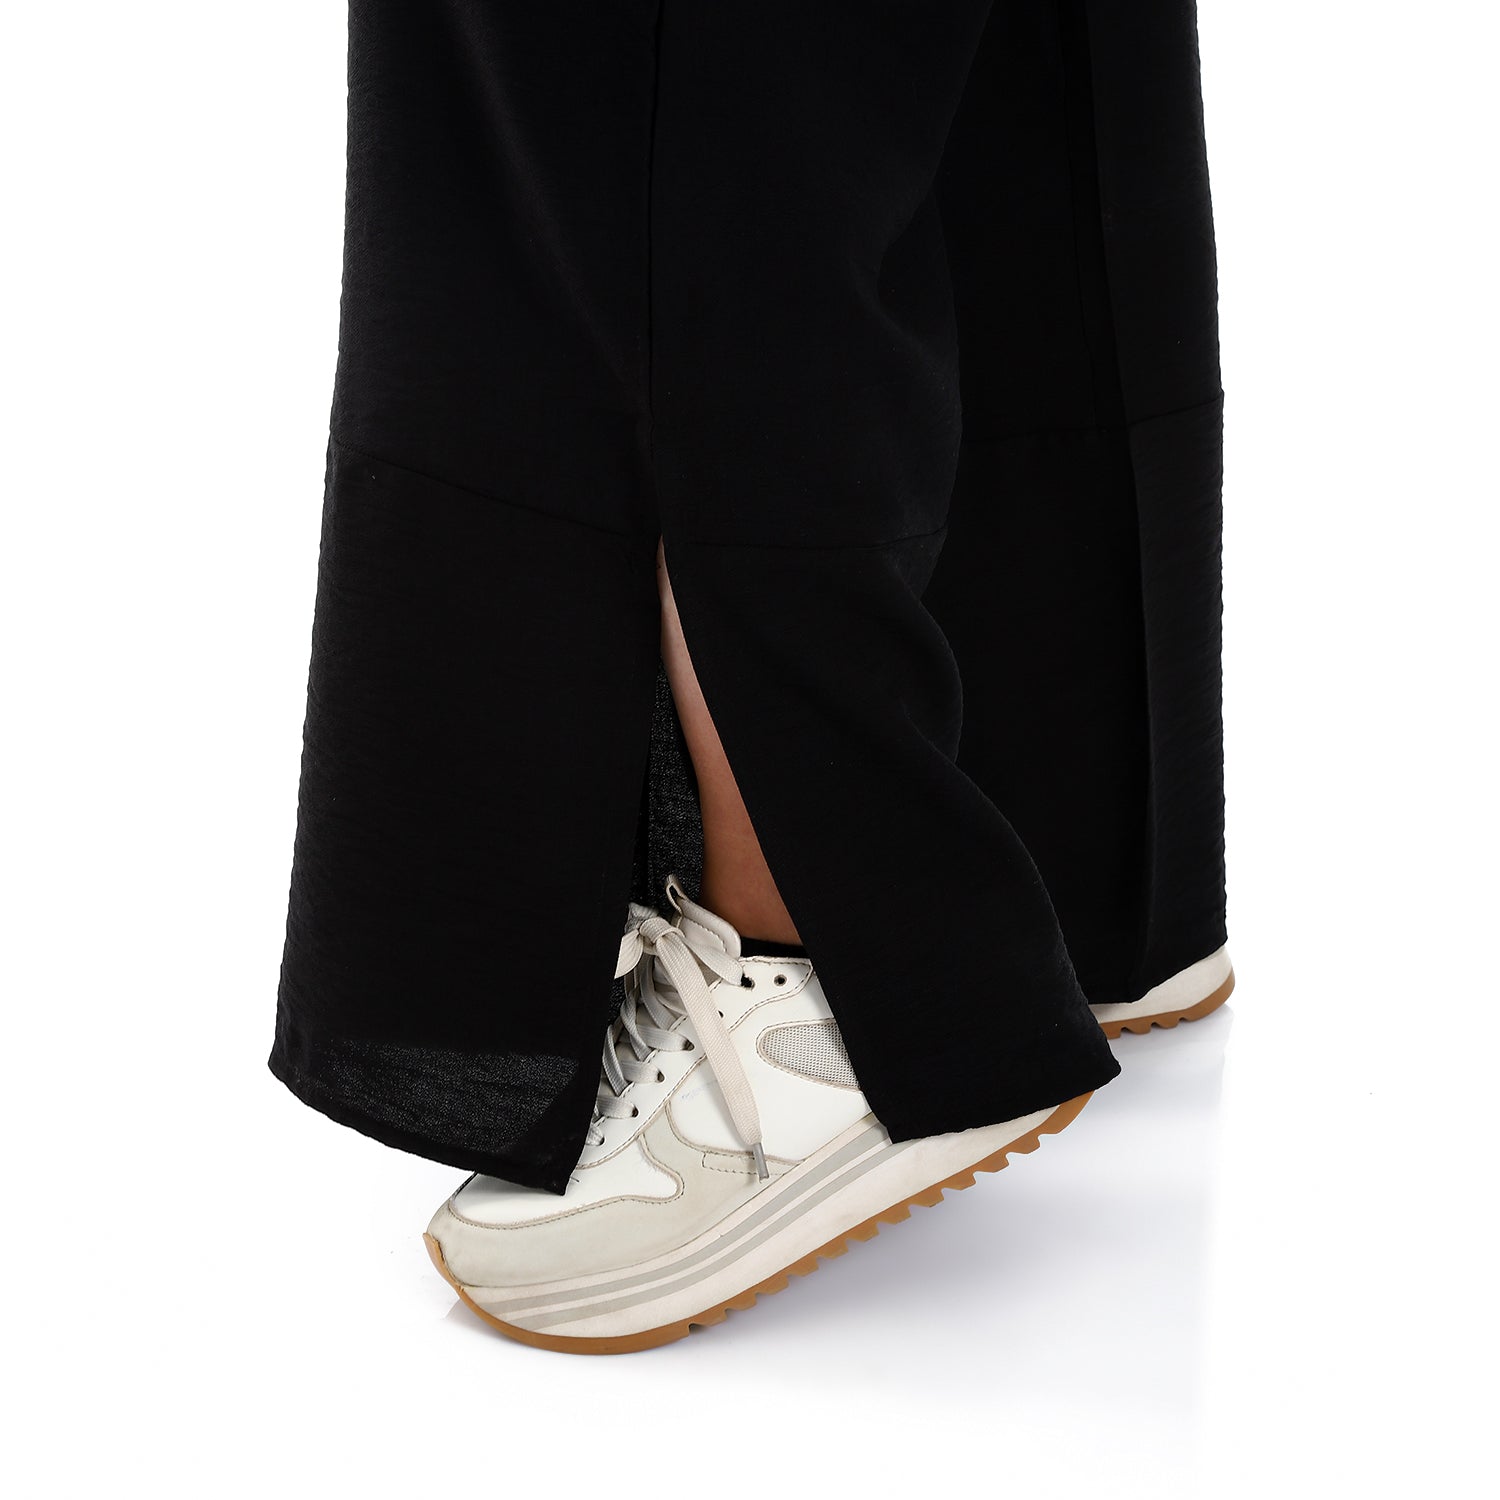 Side Pockets Practical Black Slip On Textured Pants